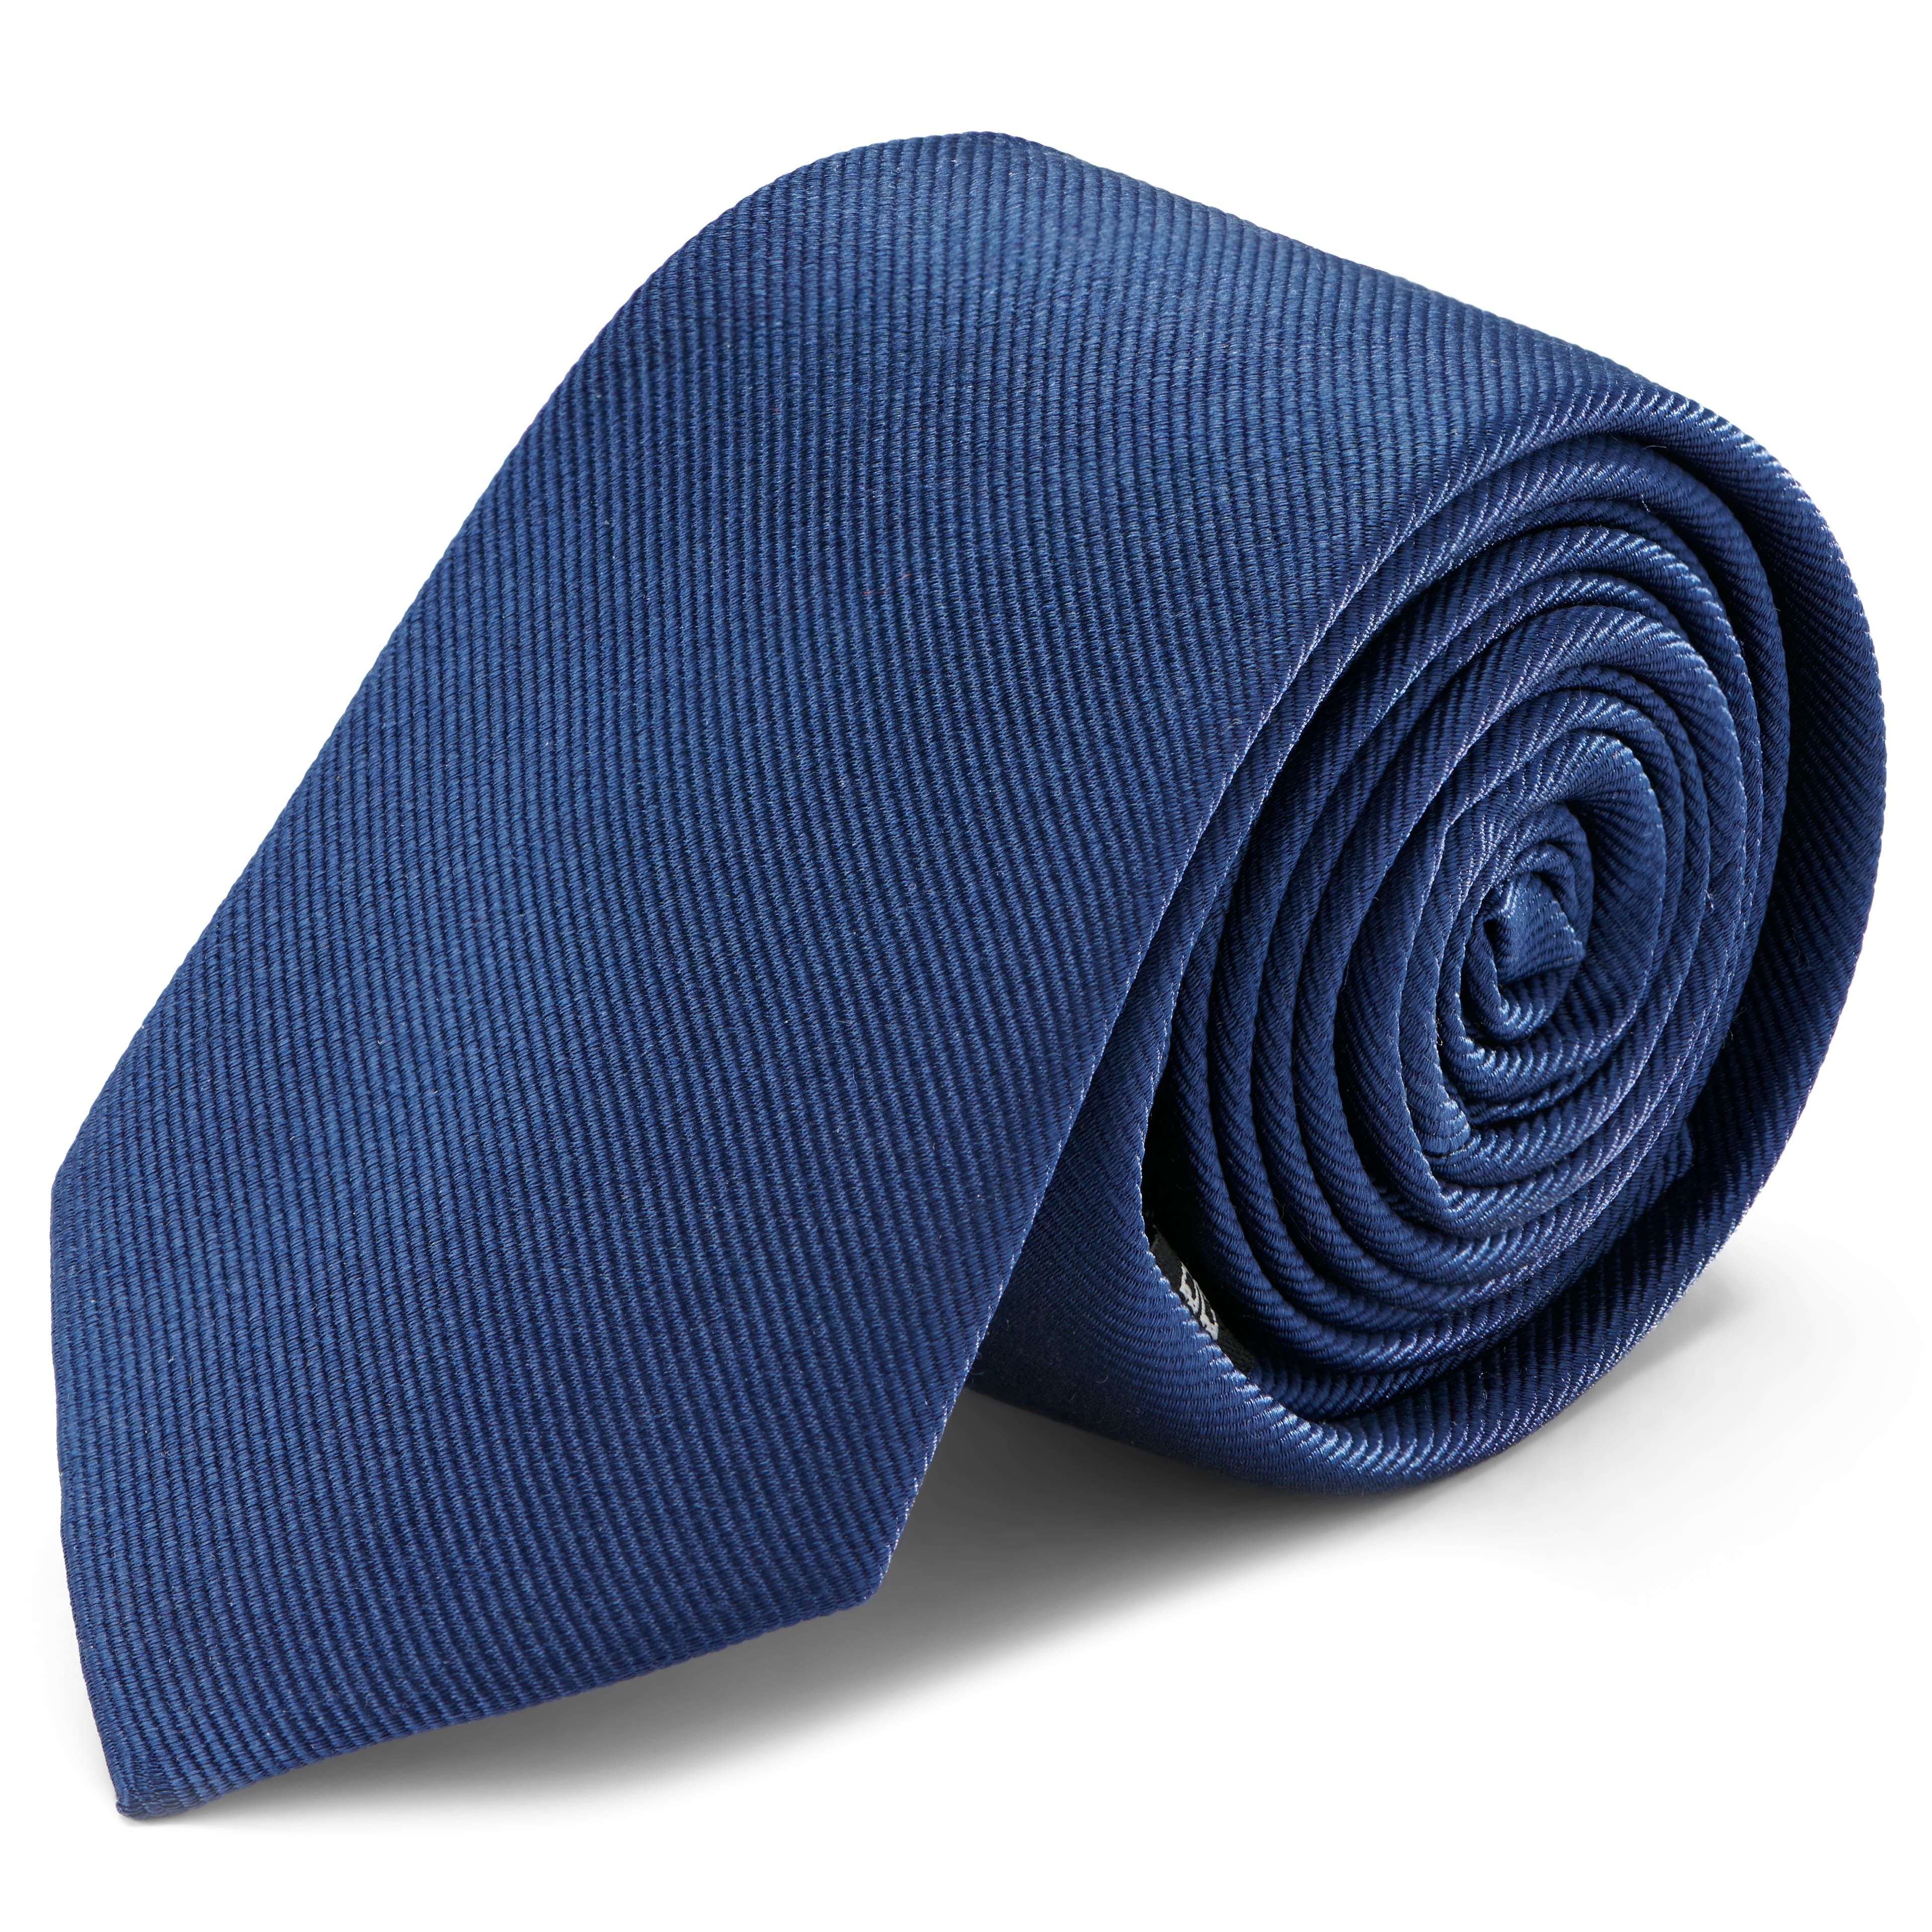 Cravatta in twill di seta blu navy da 6 cm